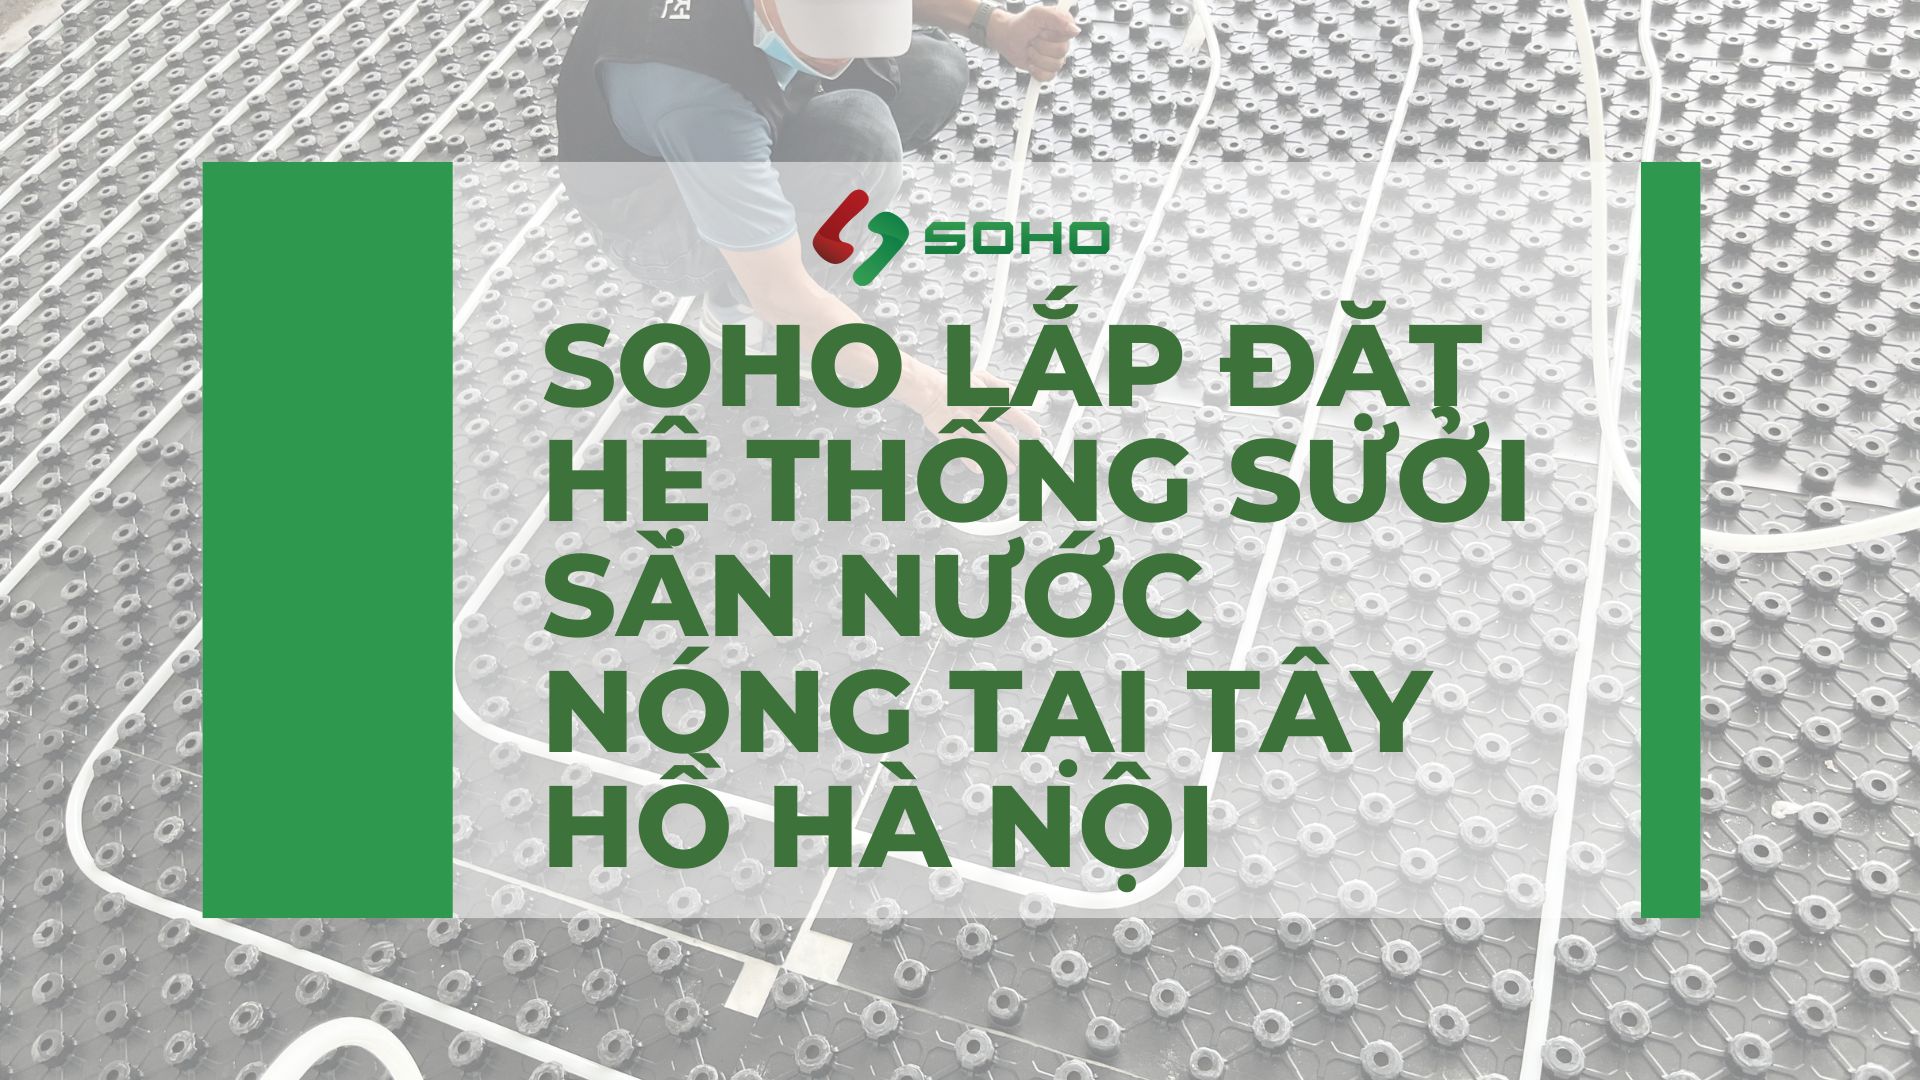 SOHO lắp đặt hệ thống sưởi sàn nhà nước nóng công trình tại Tây Hồ Hà Nội